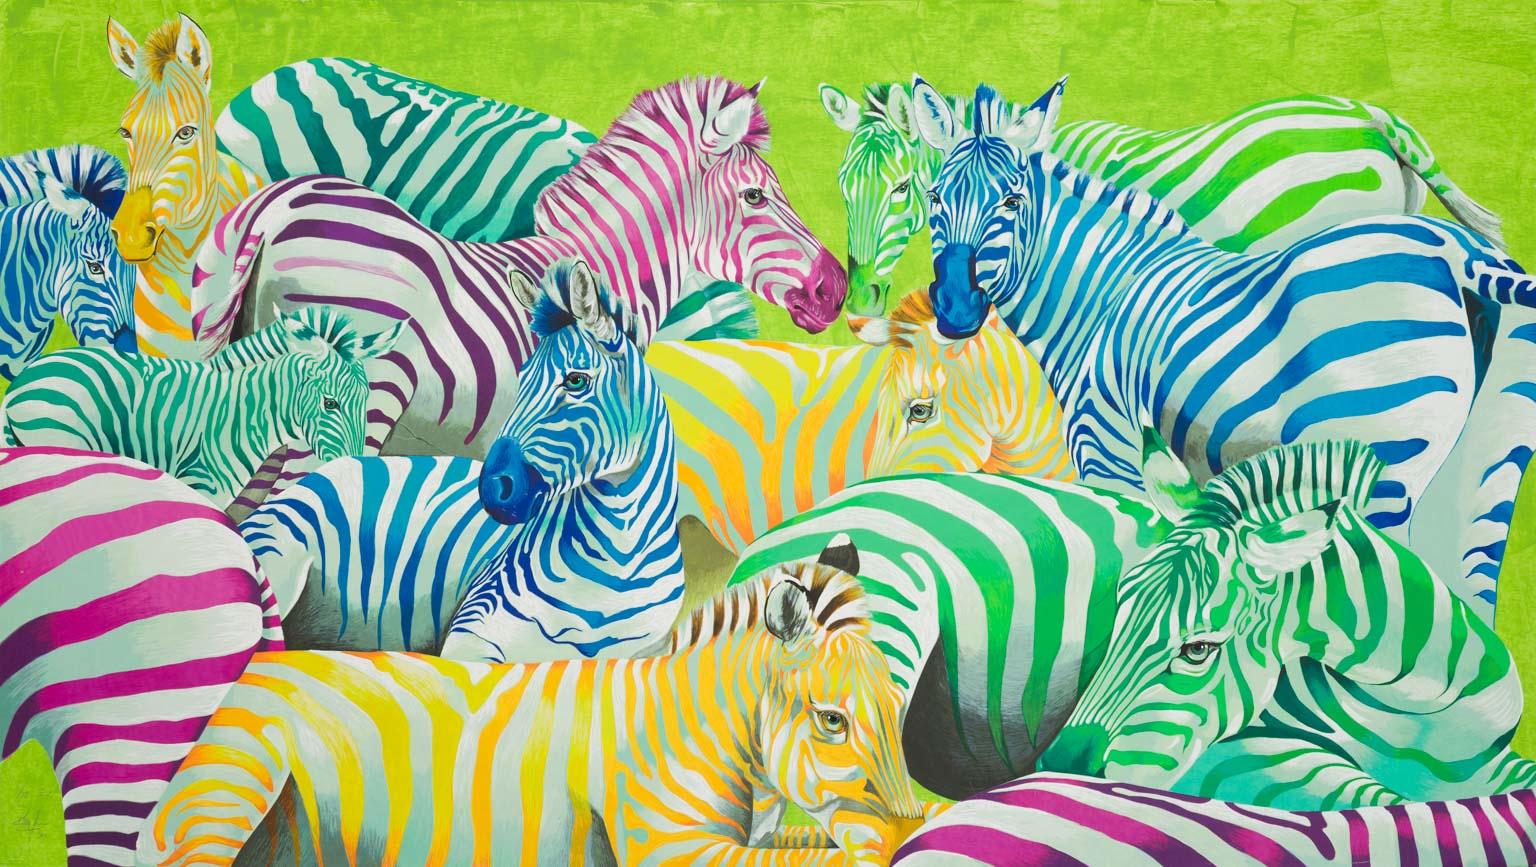 Rolf Knie  Animal Print - Zebra parade postmodern pop art of colorful zebra animal herd in vibrant colors 